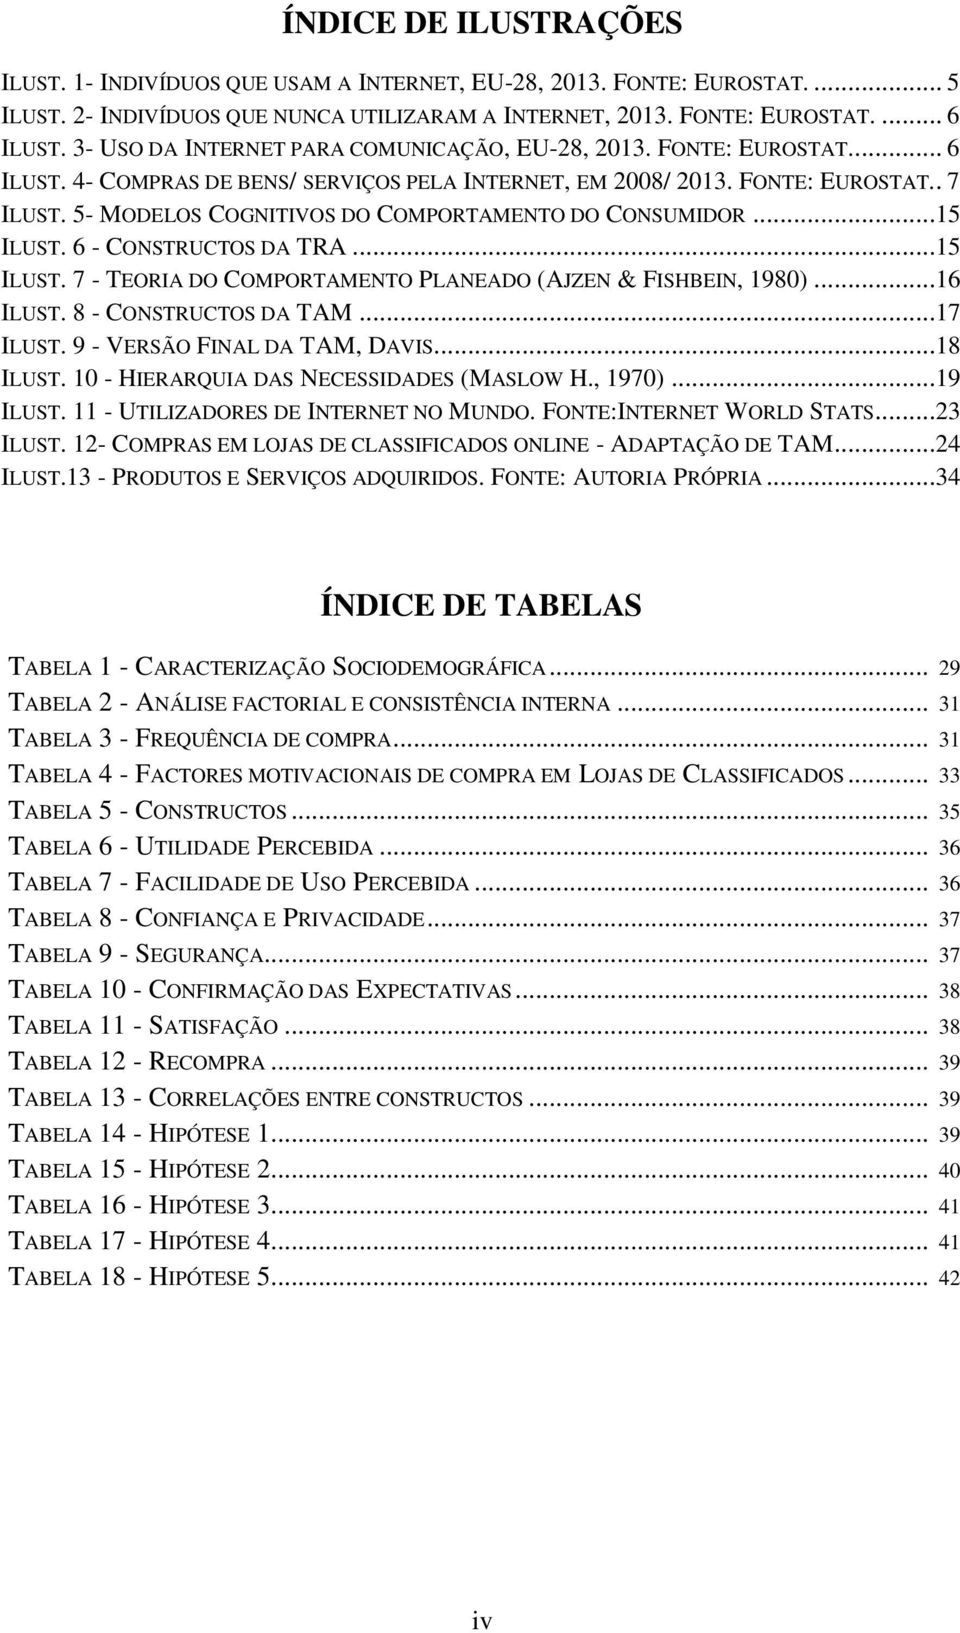 5- MODELOS COGNITIVOS DO COMPORTAMENTO DO CONSUMIDOR...15 ILUST. 6 - CONSTRUCTOS DA TRA...15 ILUST. 7 - TEORIA DO COMPORTAMENTO PLANEADO (AJZEN & FISHBEIN, 1980)...16 ILUST. 8 - CONSTRUCTOS DA TAM.